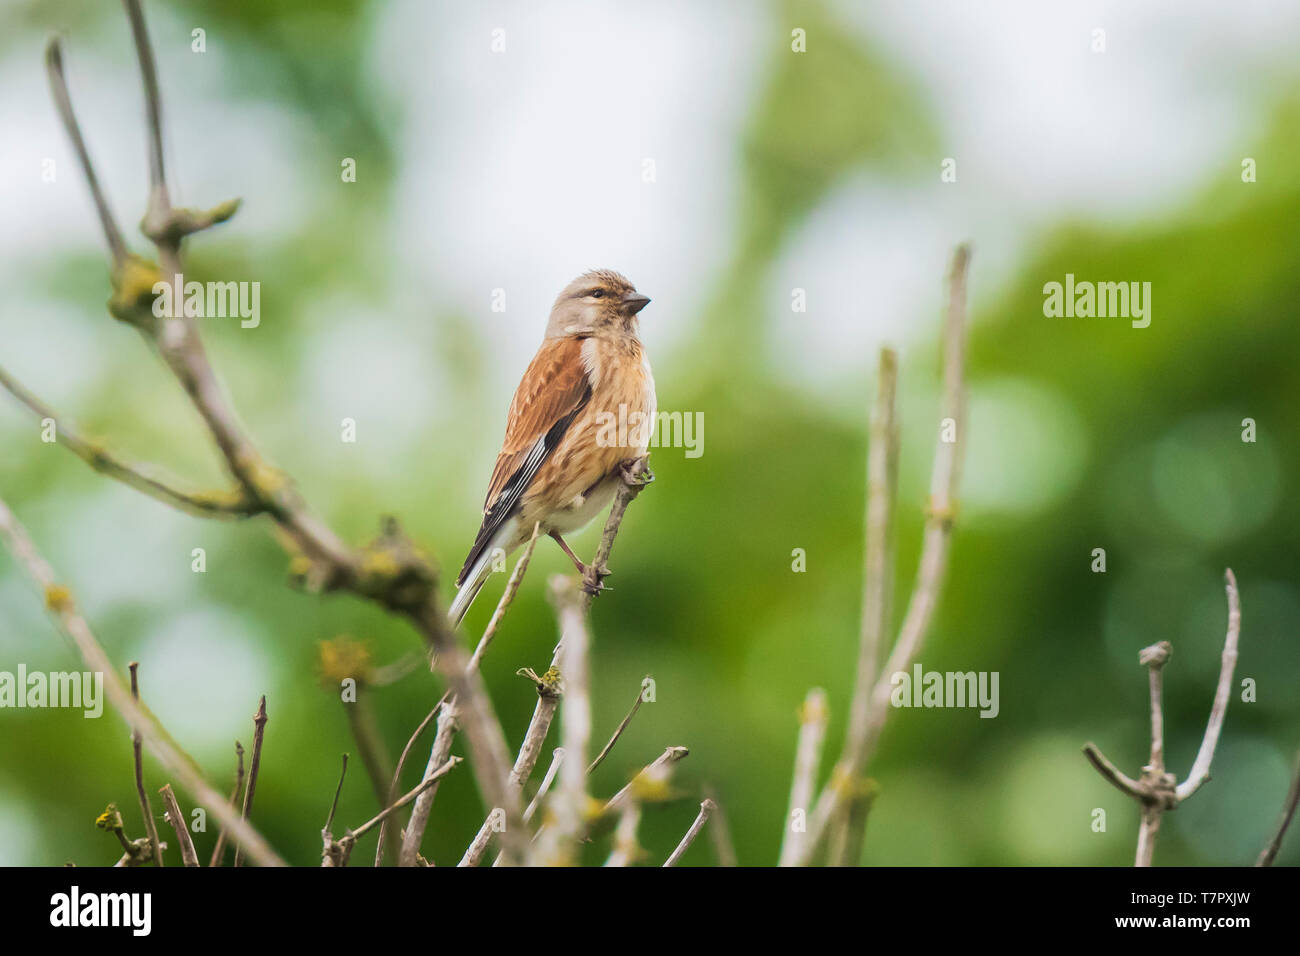 Closeup Portrait einer hänfling Vogel, Carduelis cannabina, weiblich und auf der Suche nach einem Gehilfen im Frühling Saison. Gesang in der frühen Morgensonne Stockfoto